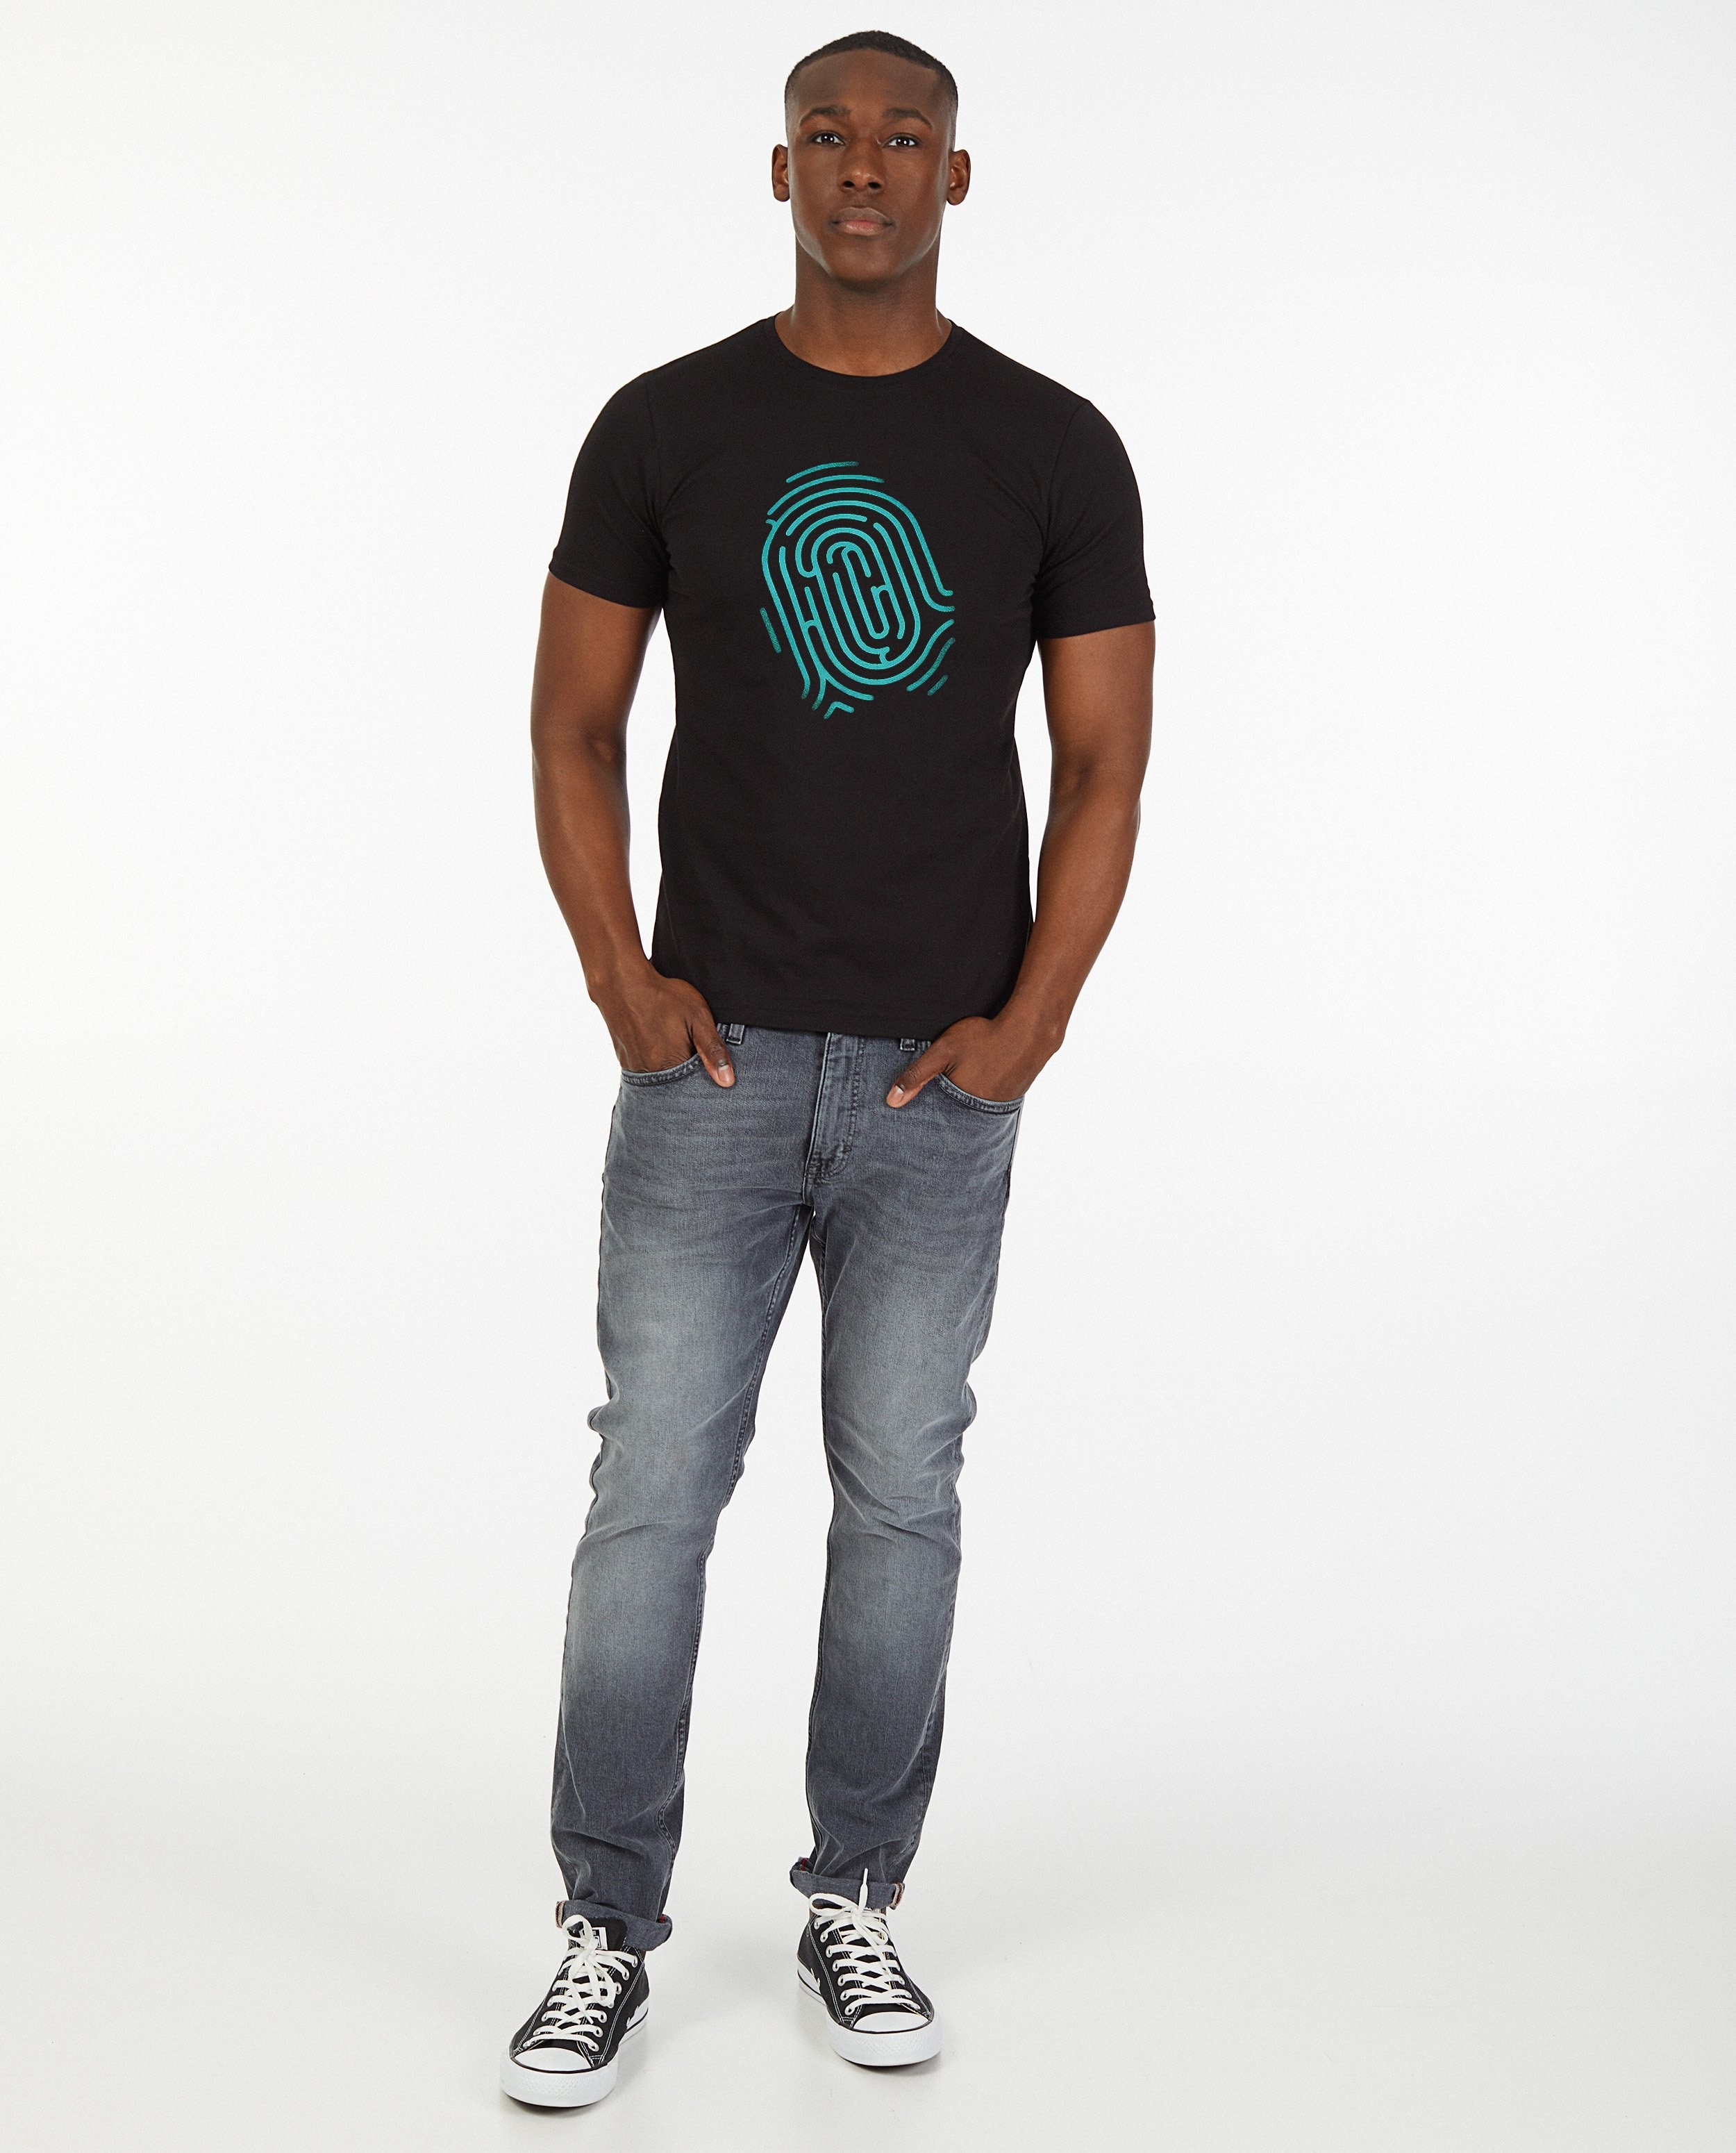 Zwart De Mol-shirt - personaliseerbaar - De Mol